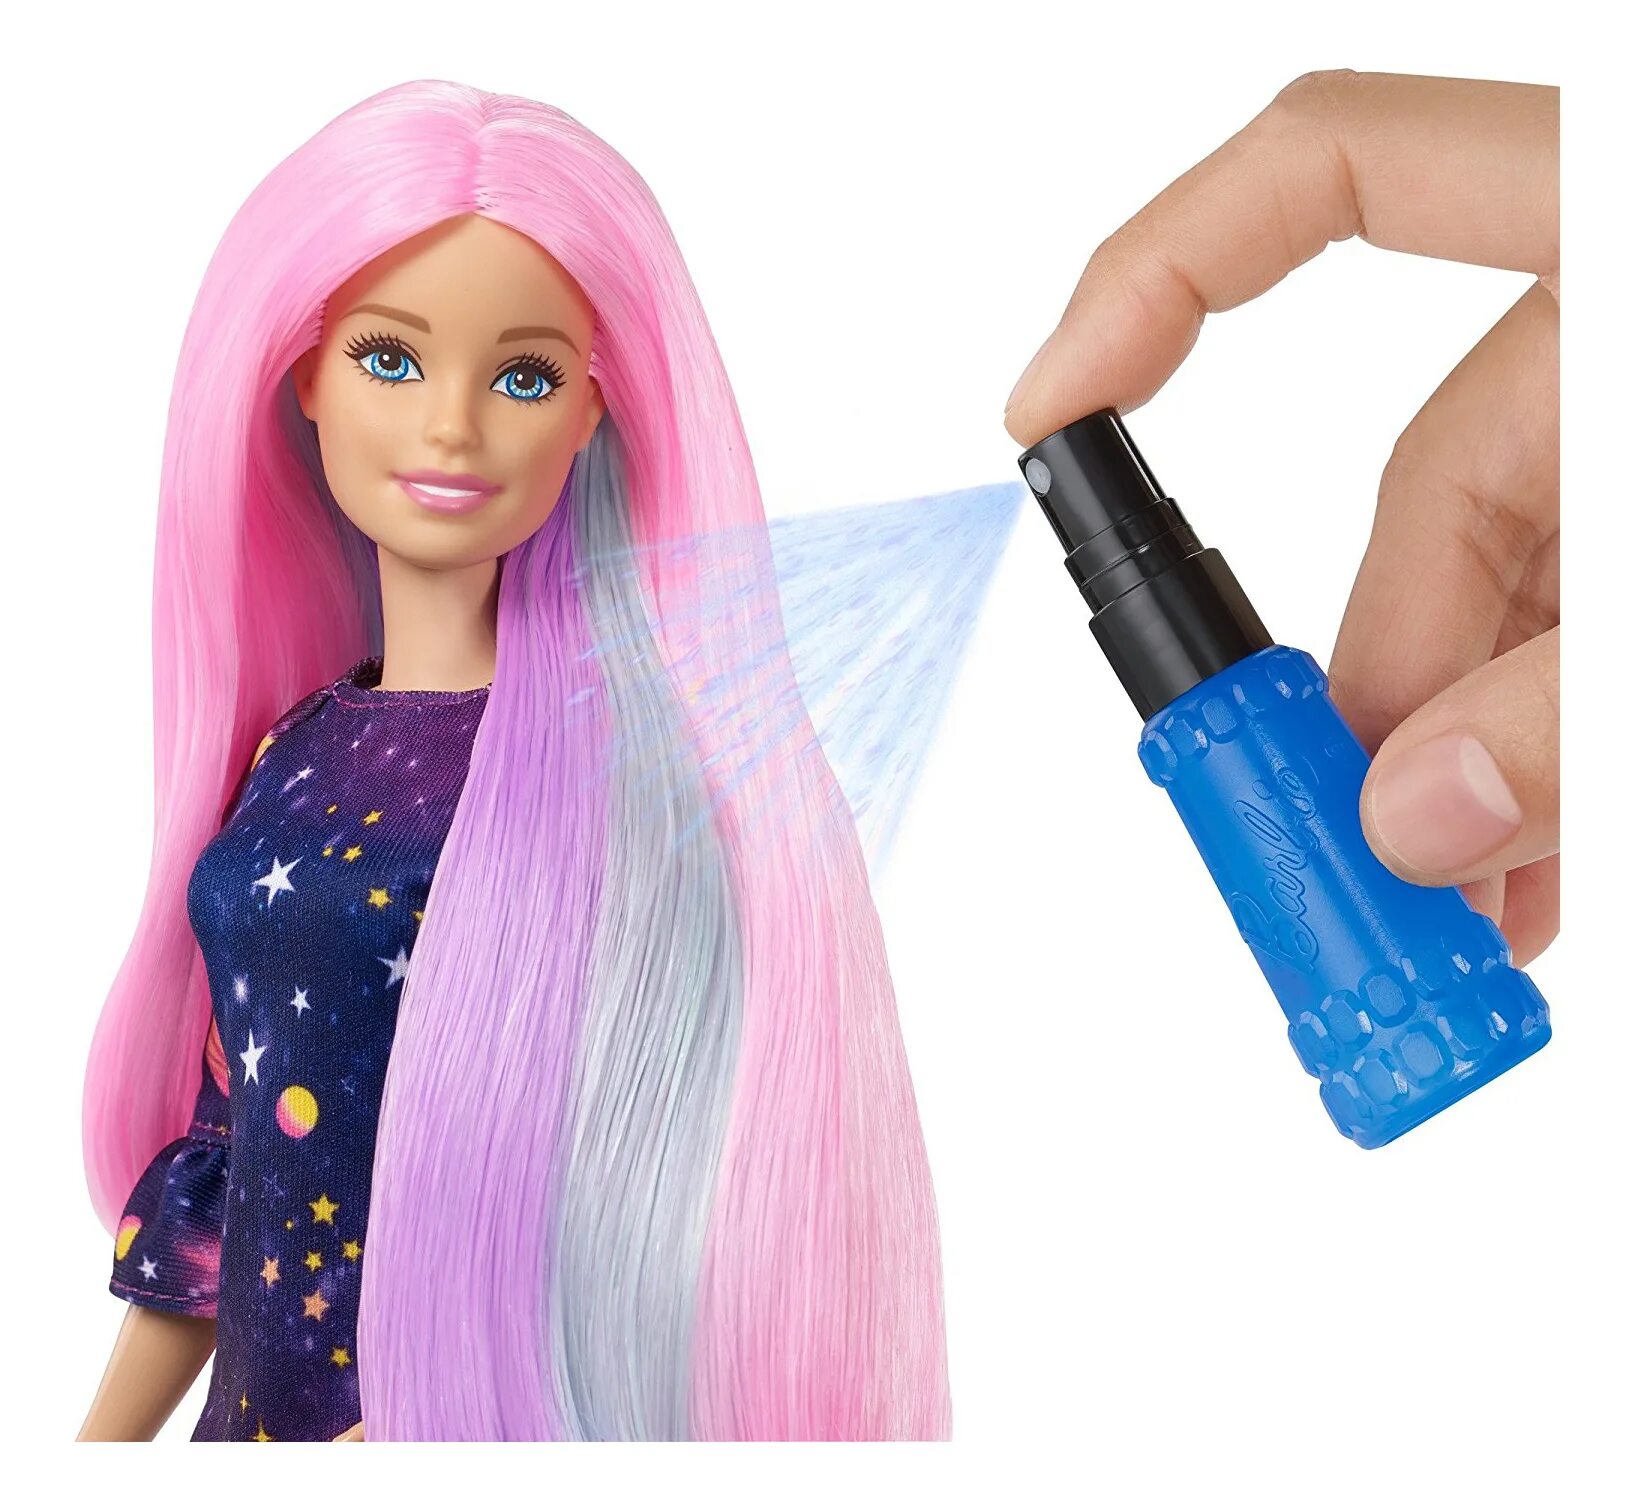 Куклы Барби колор Ревил. Барби колор Тревел сюрприз. Кукла Барби с розовыми волосами. Куклы Барби набор для волос. Какие волосы были у куклы